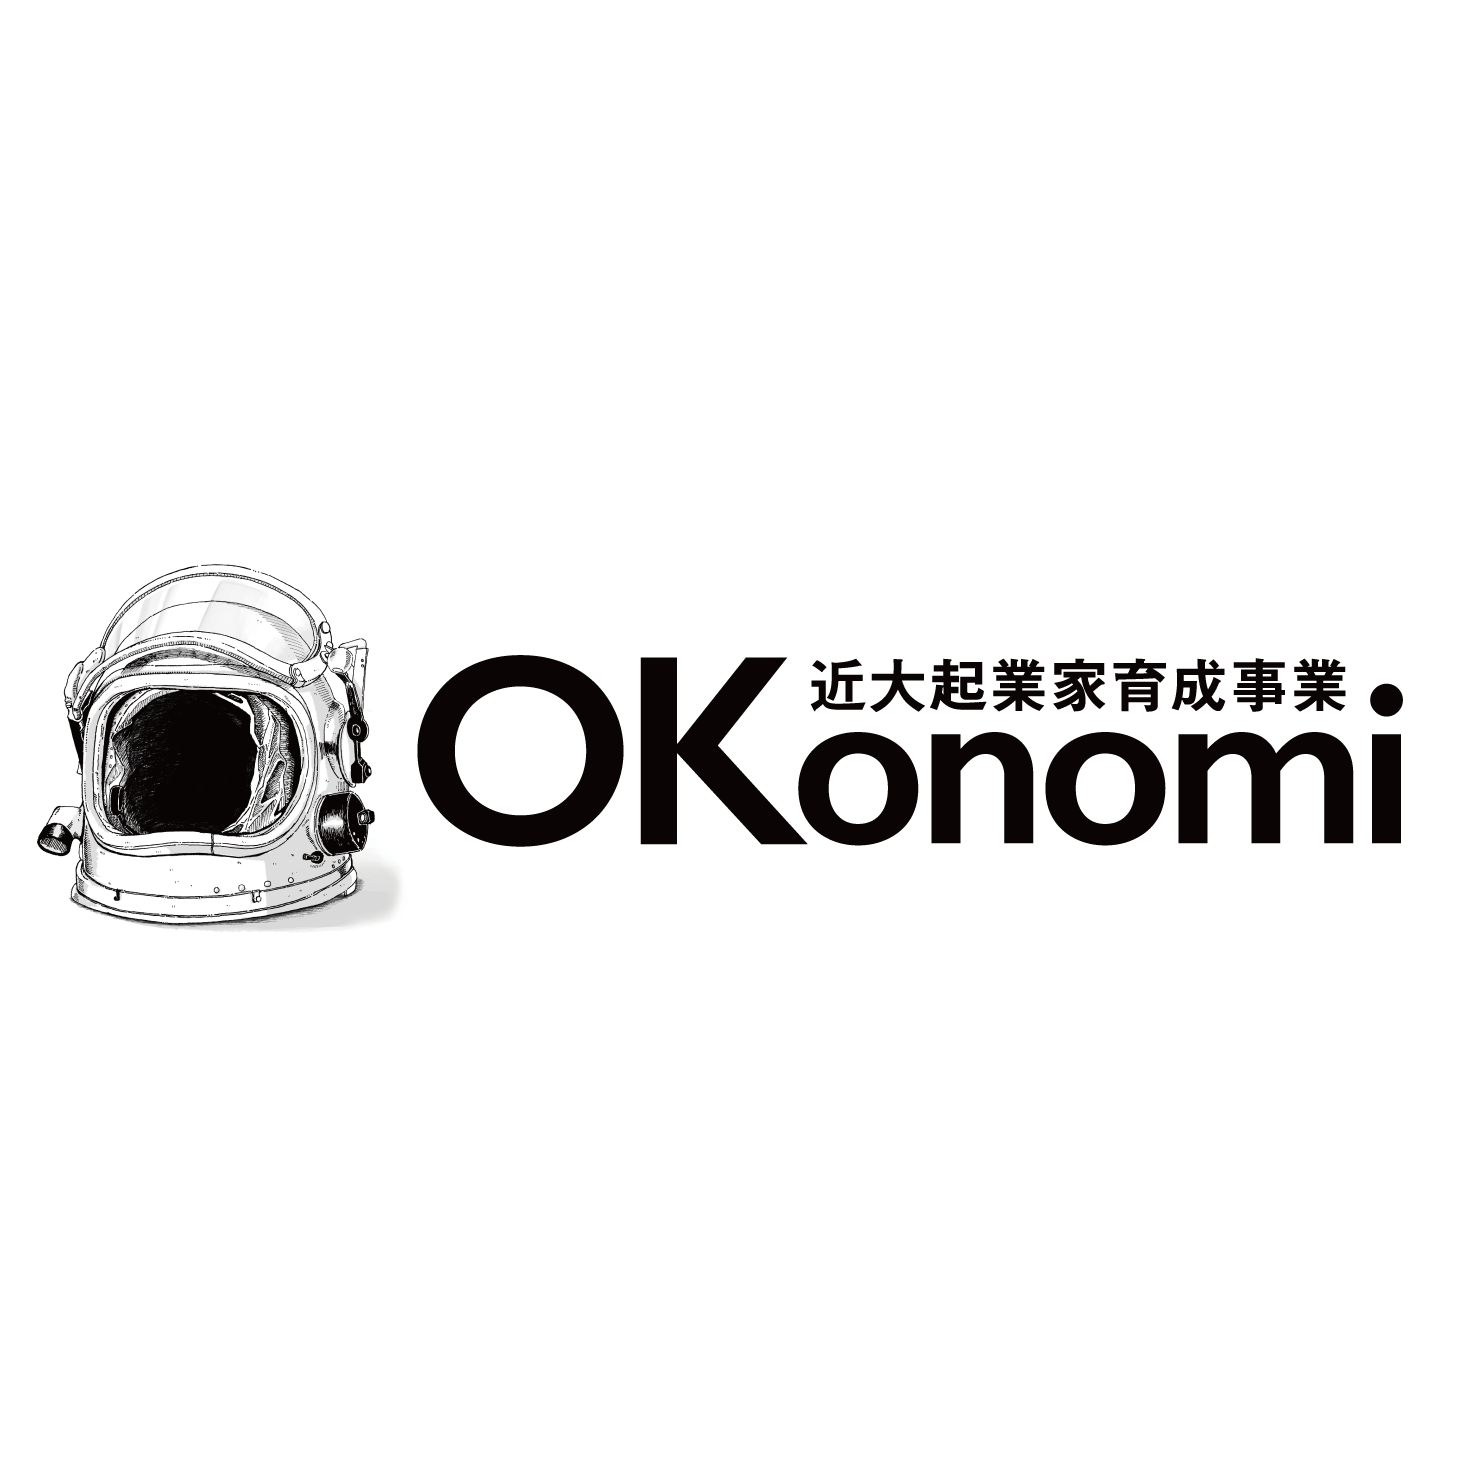 近畿大学起業家育成事業Okonomi